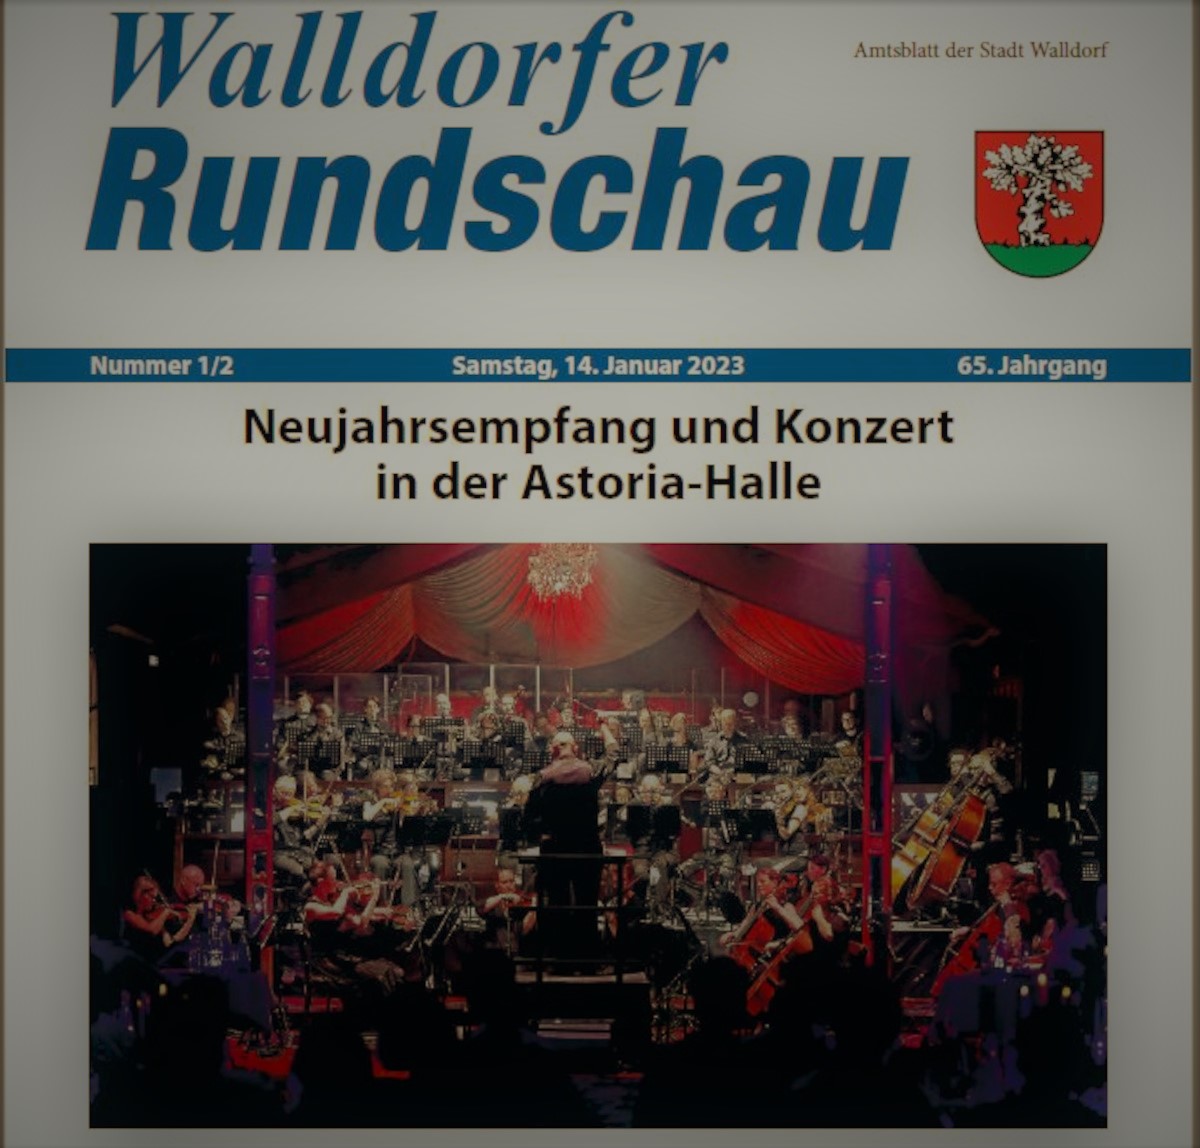 Die Walldorfer Rundschau 2023 Nr. 2 als E-paper | Bildschirmabgriff